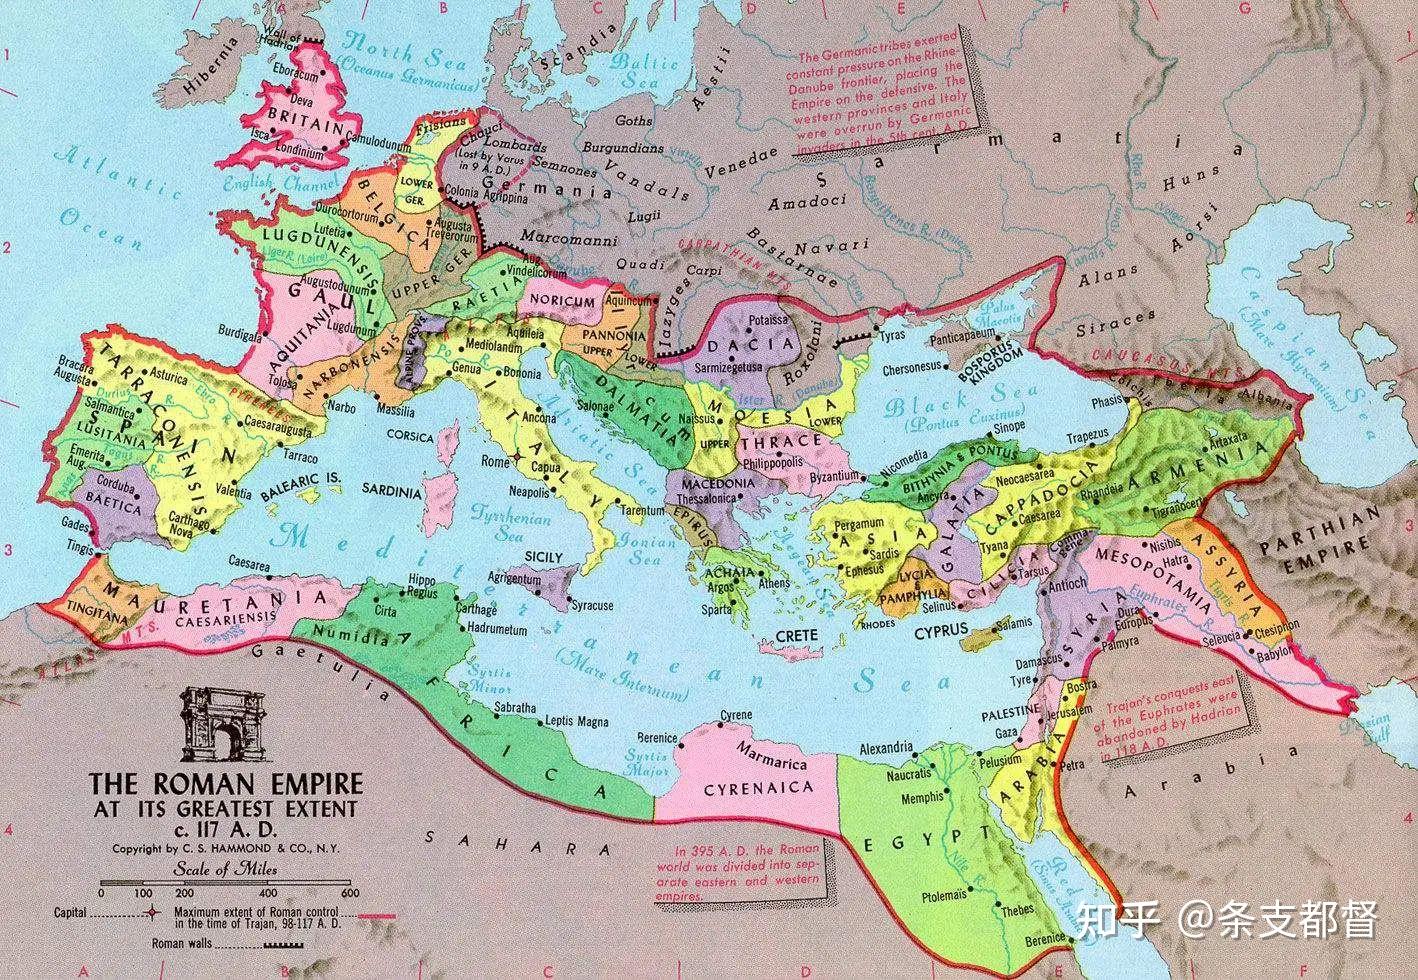 奥斯曼帝国如果算上羁縻统治的版图